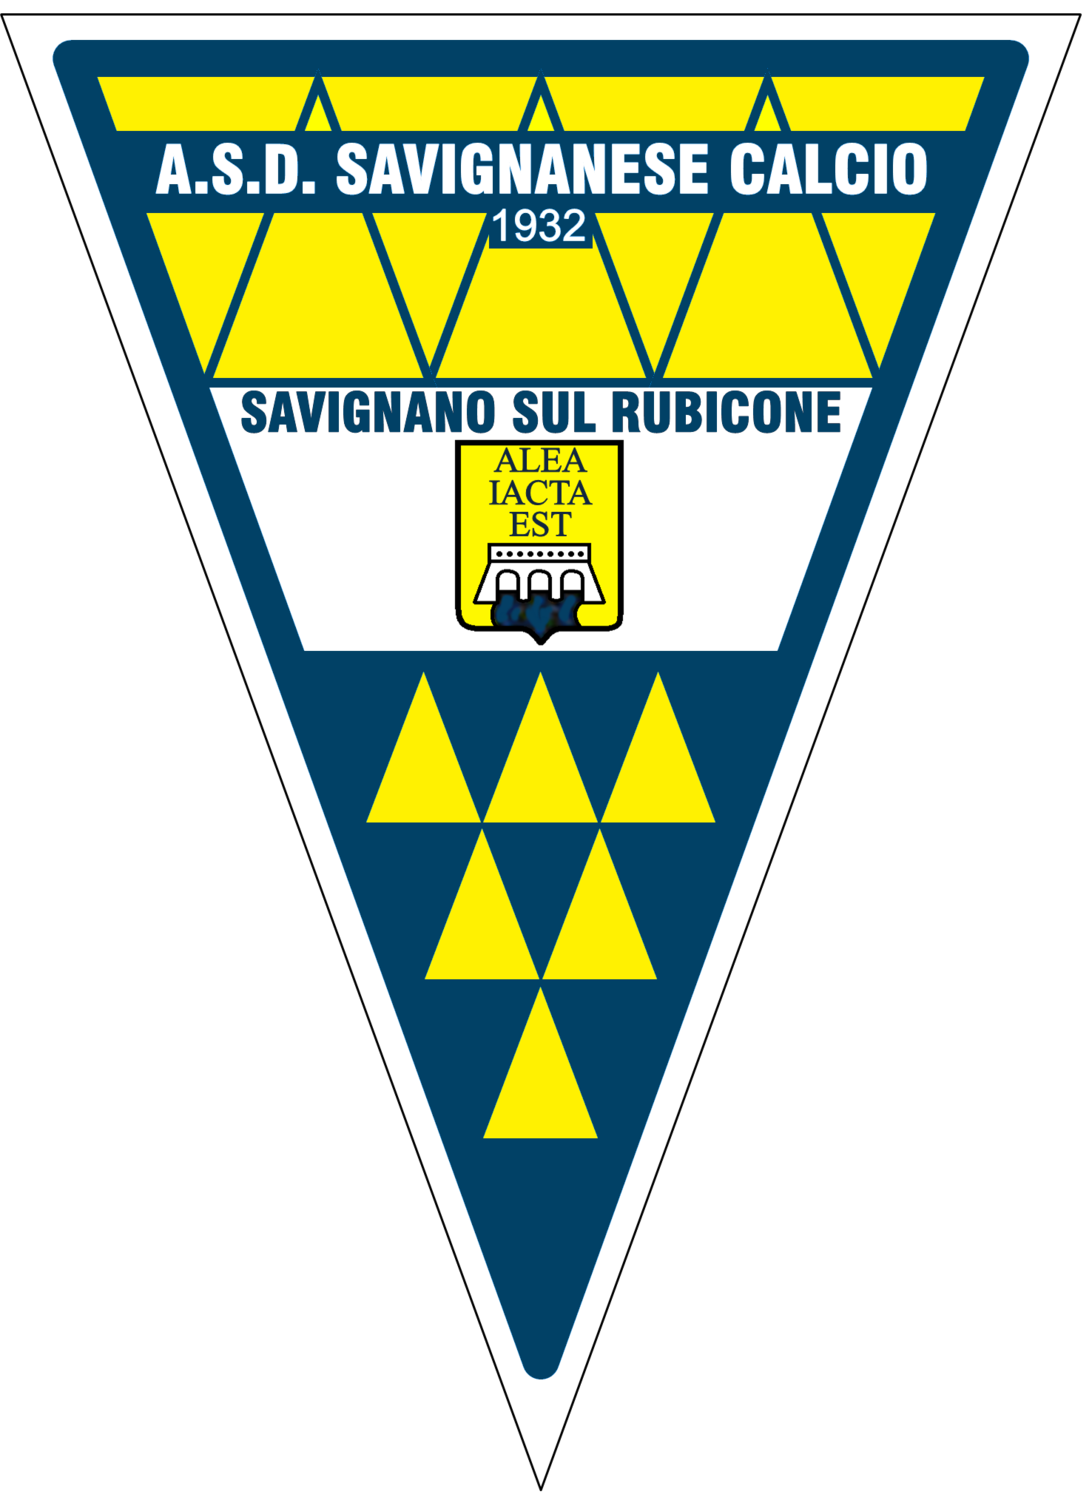 A.S.D. Savignanese Calcio